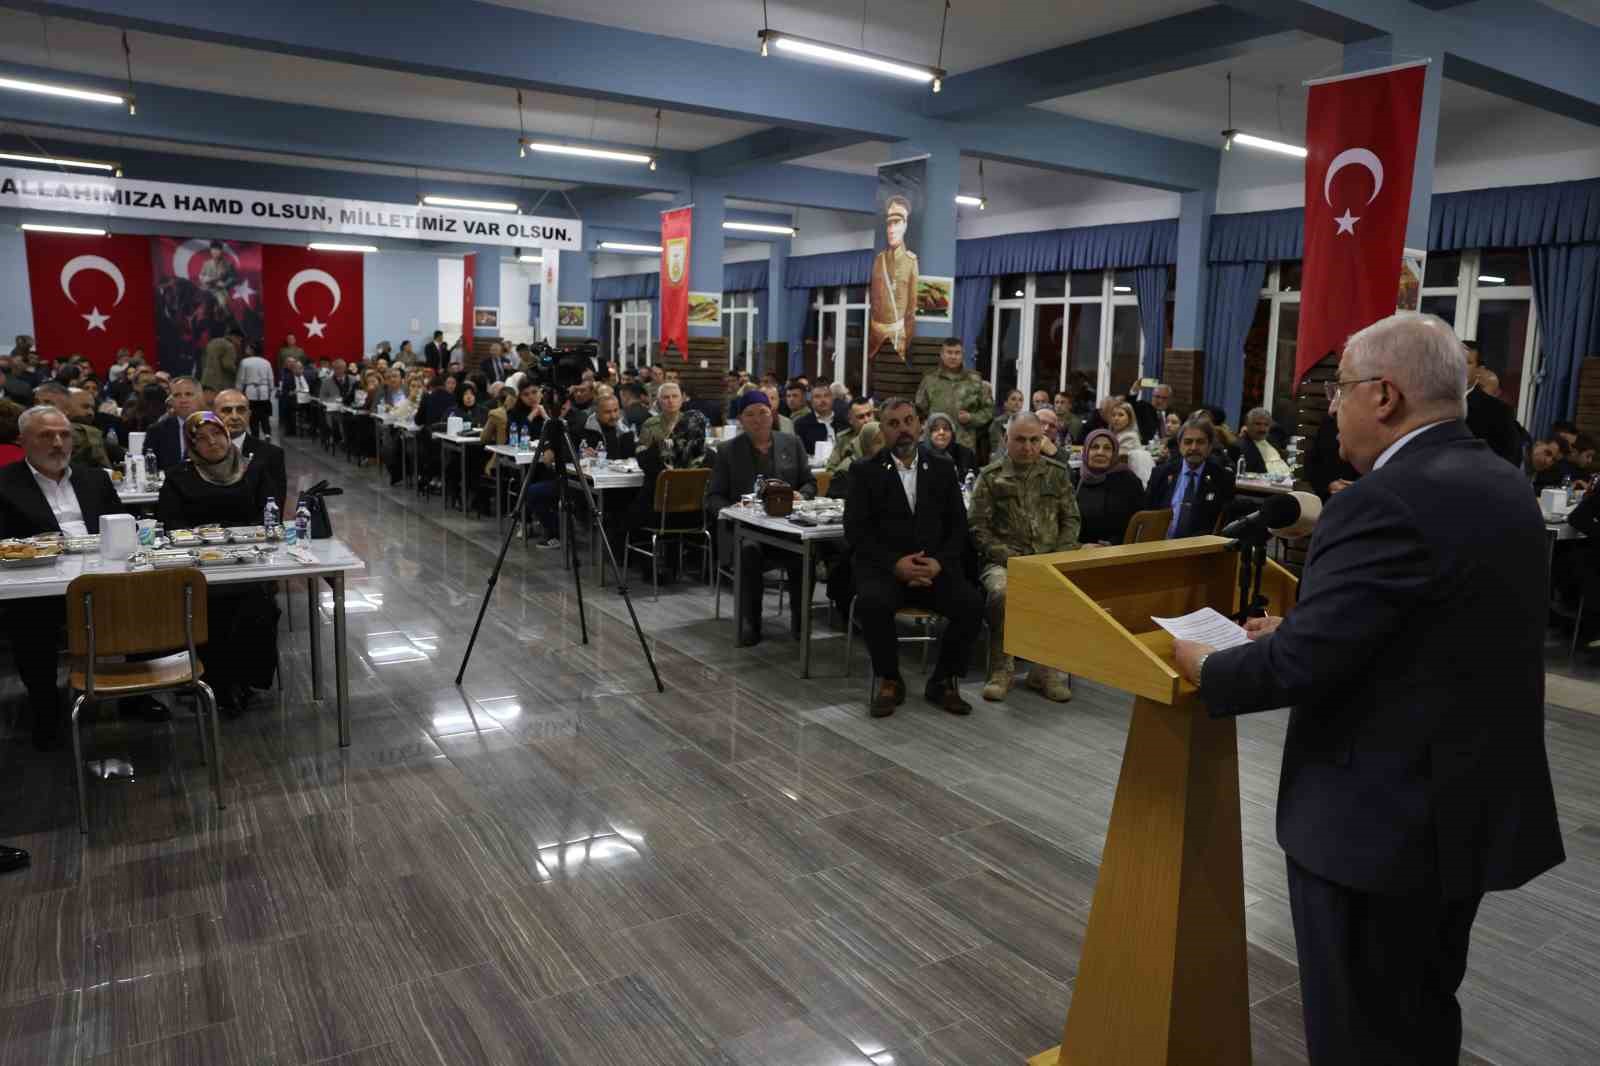 Milli Savunma Bakanı Güler: "Örgütün hareket kabiliyetini bitme noktasına getirdik"
